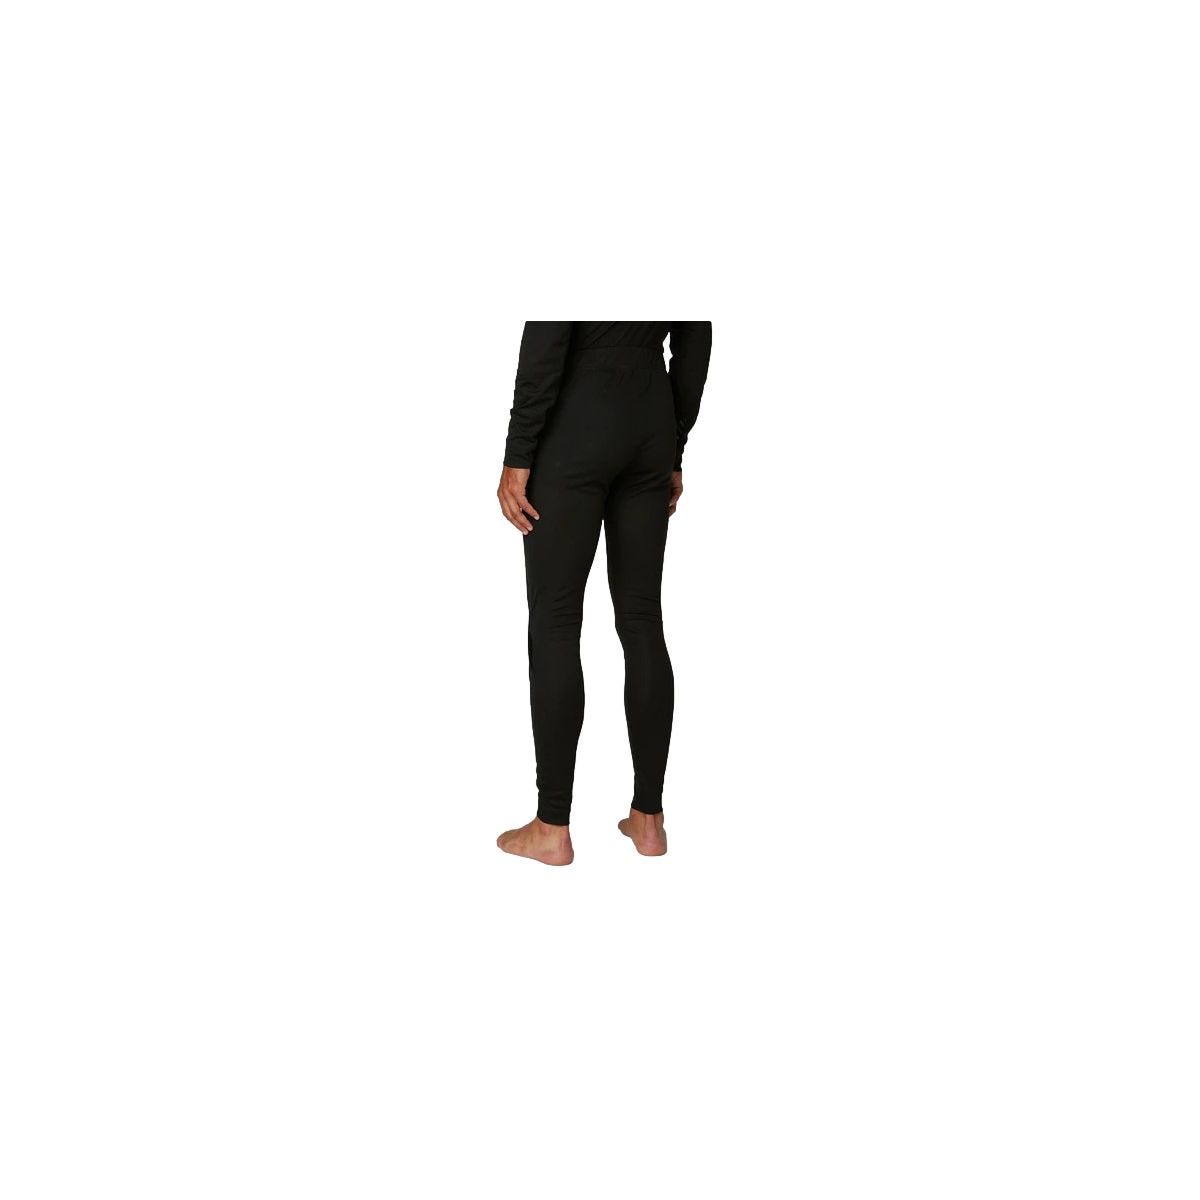 Pantalon sous-vêtement technique Lifa Noir - Helly Hansen - Taille XL 3